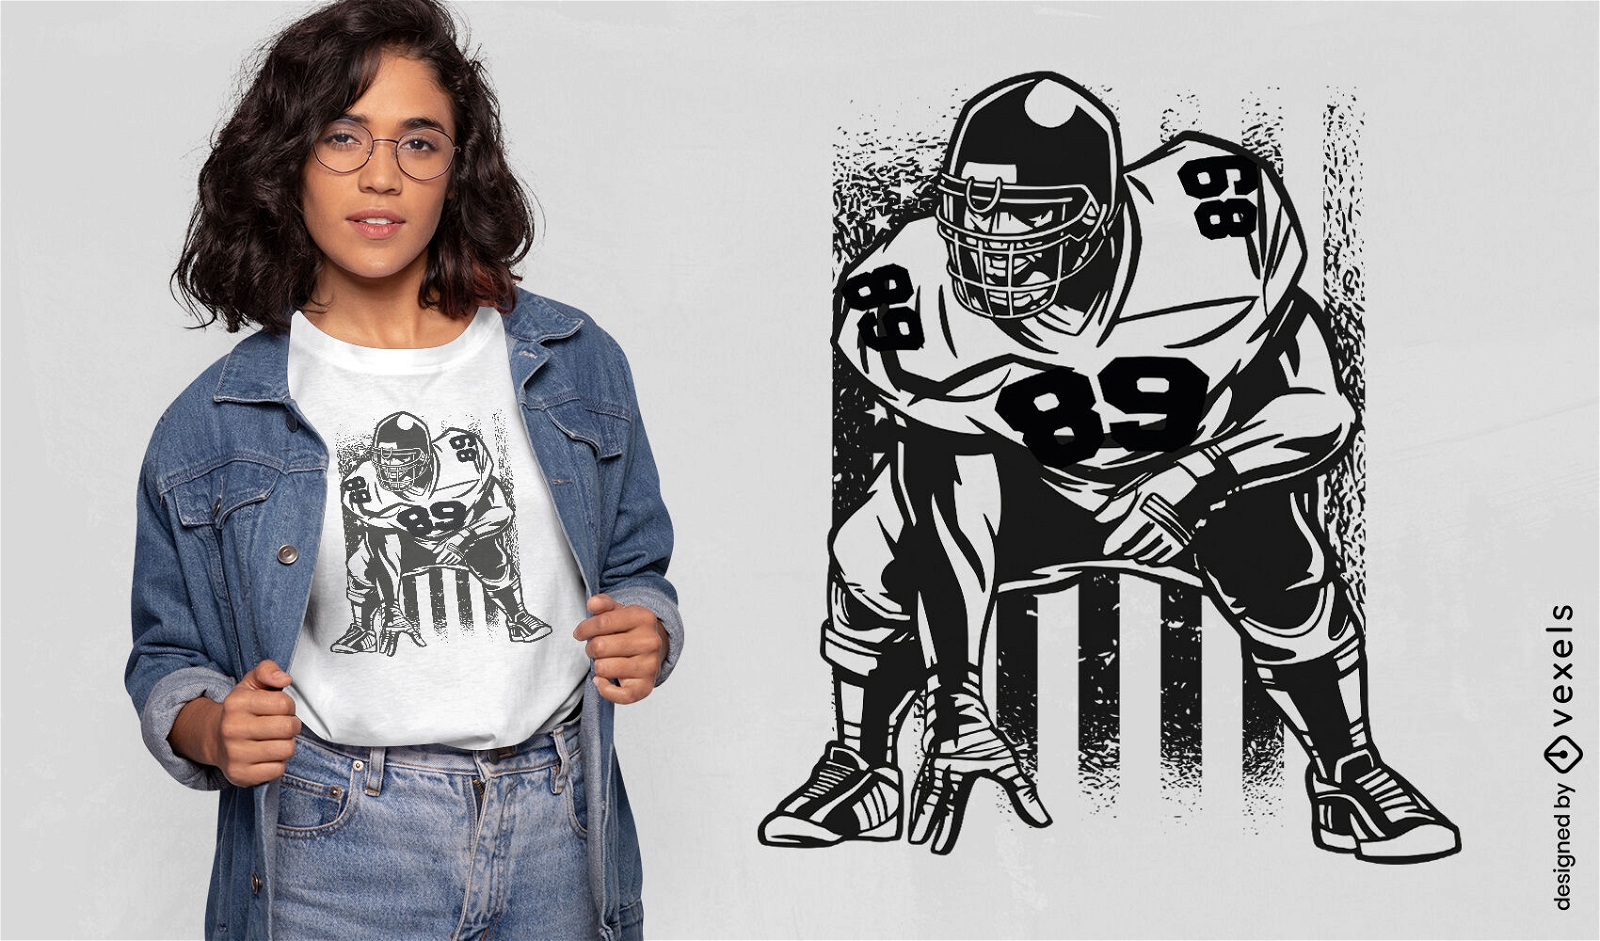 Diseño de camiseta de jugador de fútbol americano y bandera.